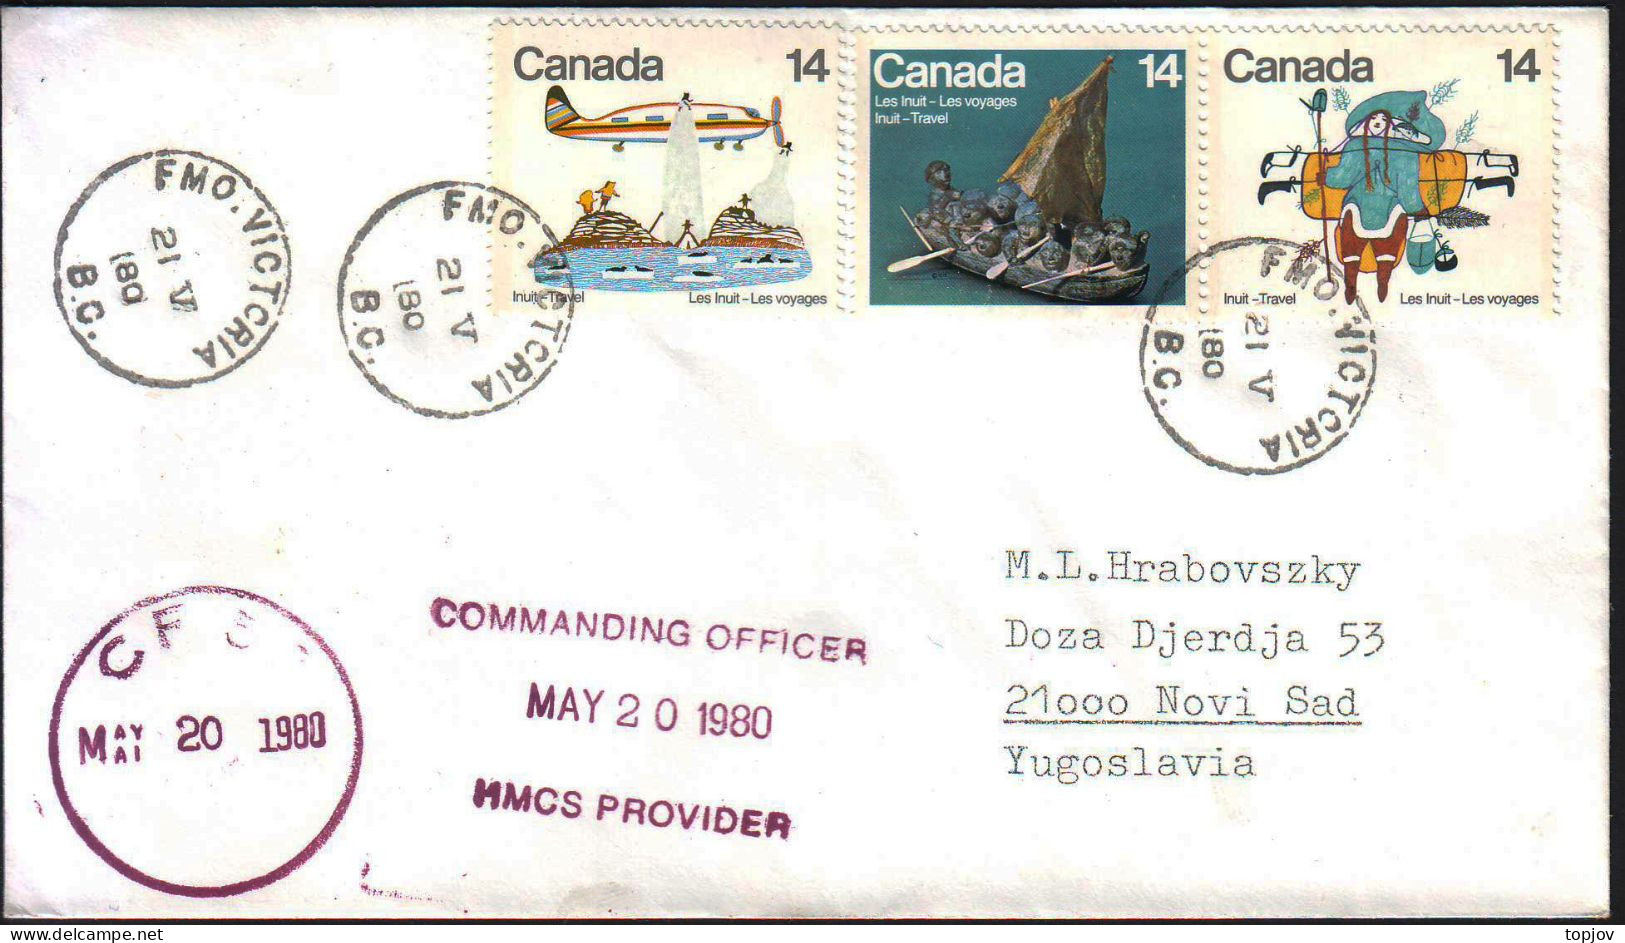 CANADA - CFS - HMCS PROVIDER - FMO VICTORIA - 1980 - Expéditions Arctiques